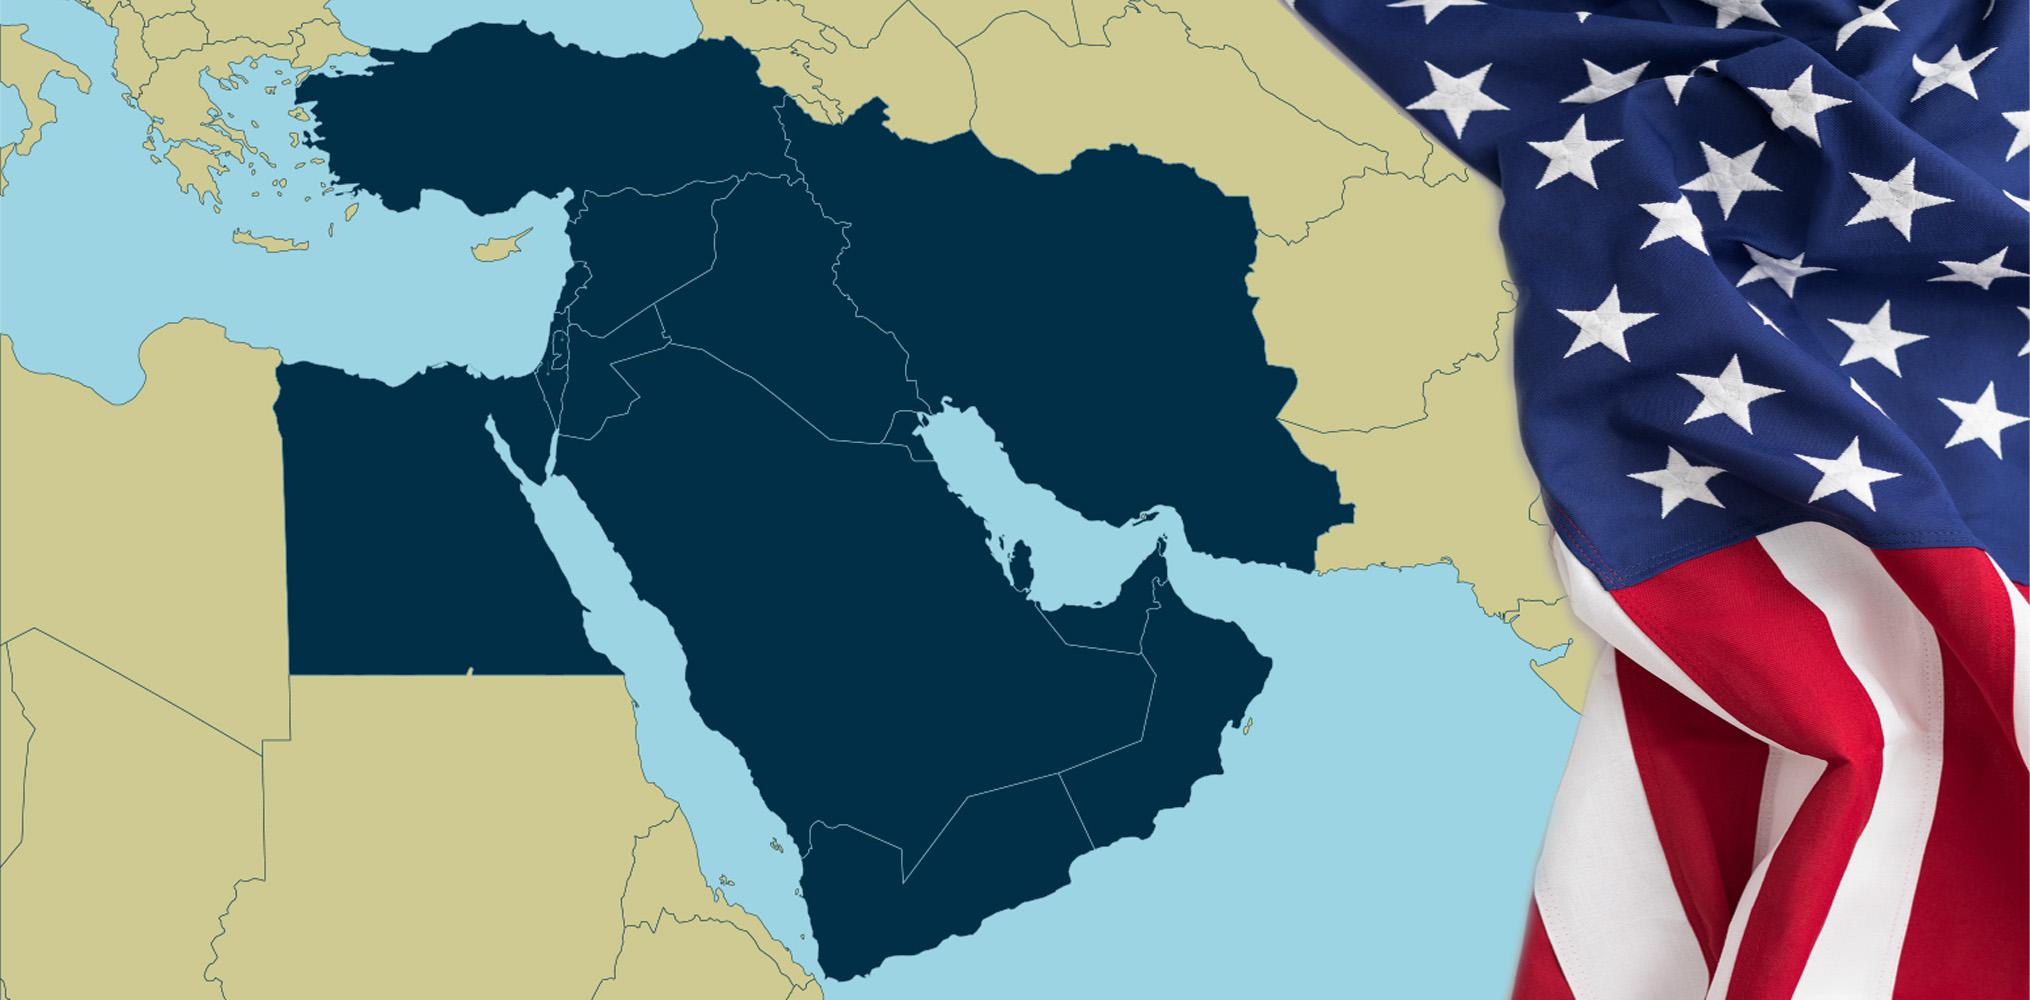 ما التحديات التي تعترض مساعي واشنطن لتعزيز حضورها بالشرق الأوسط؟